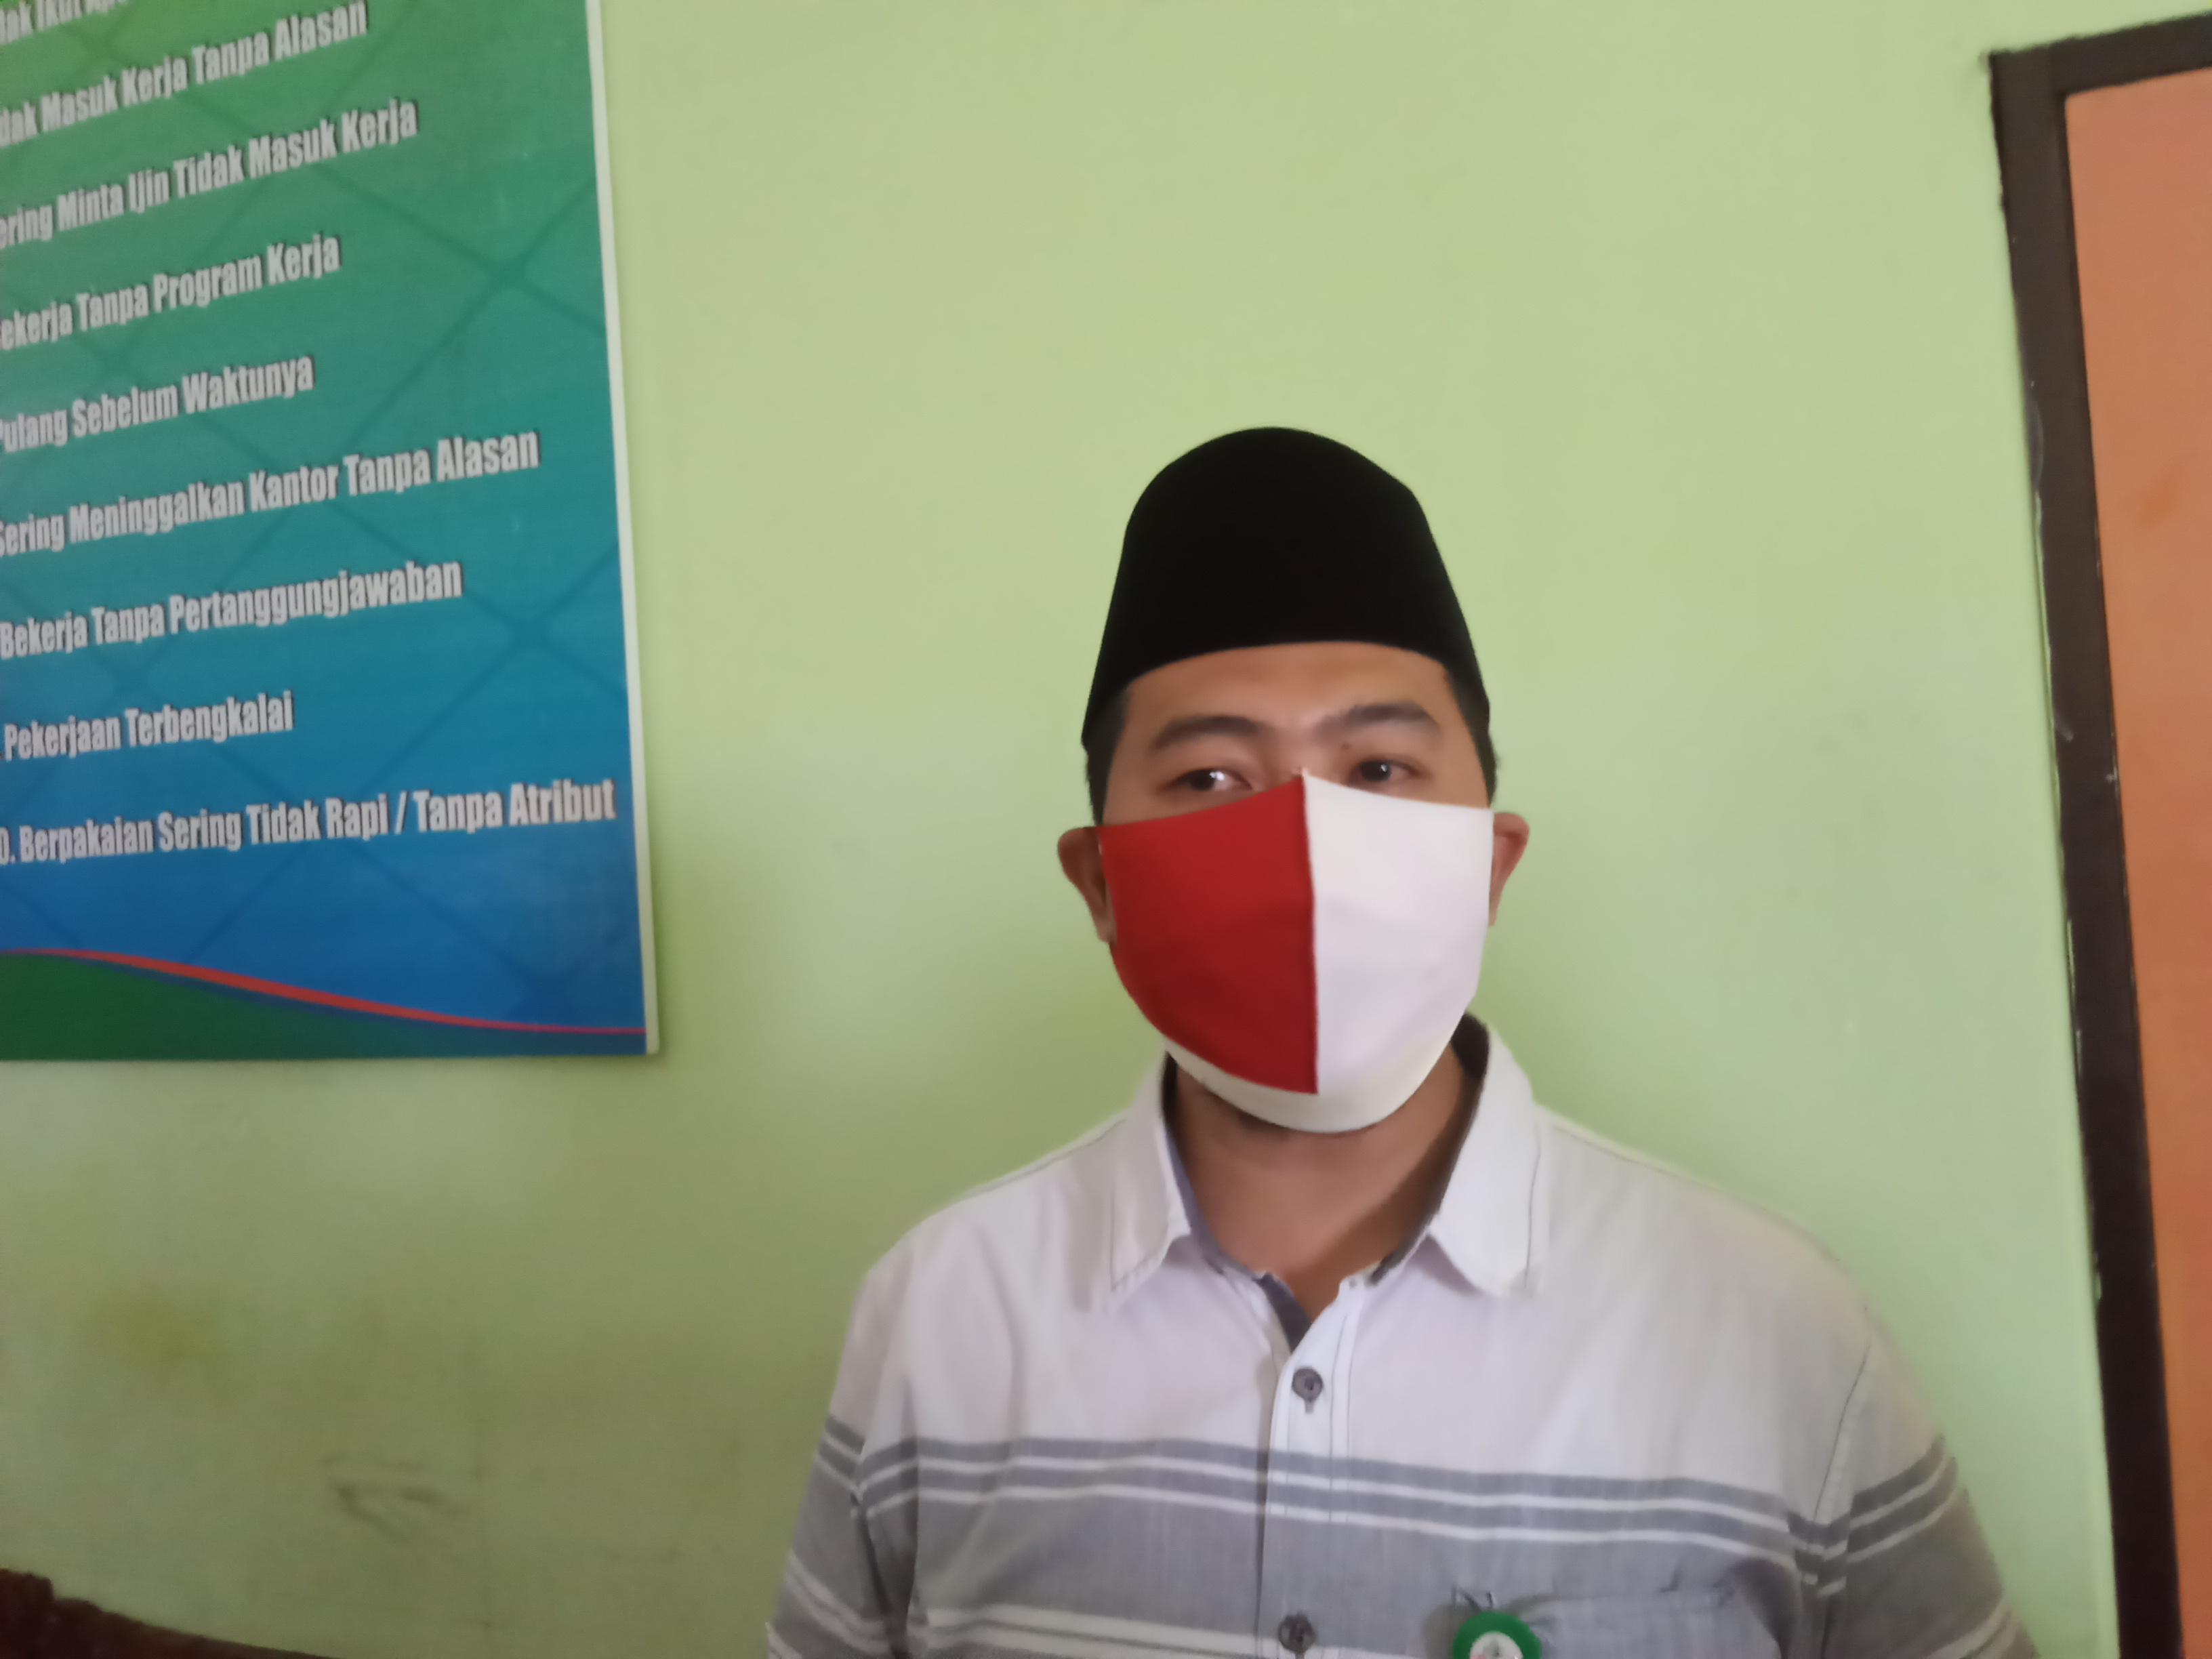 Kassubag Humas RSSA Kota Malang, Donny Iryan, saat memberikan keterangan terkait kondisi ruang isolasi ditemui di lantai empat gedung RSSA Malang, Jawa Timur. (Foto: Istimewa)